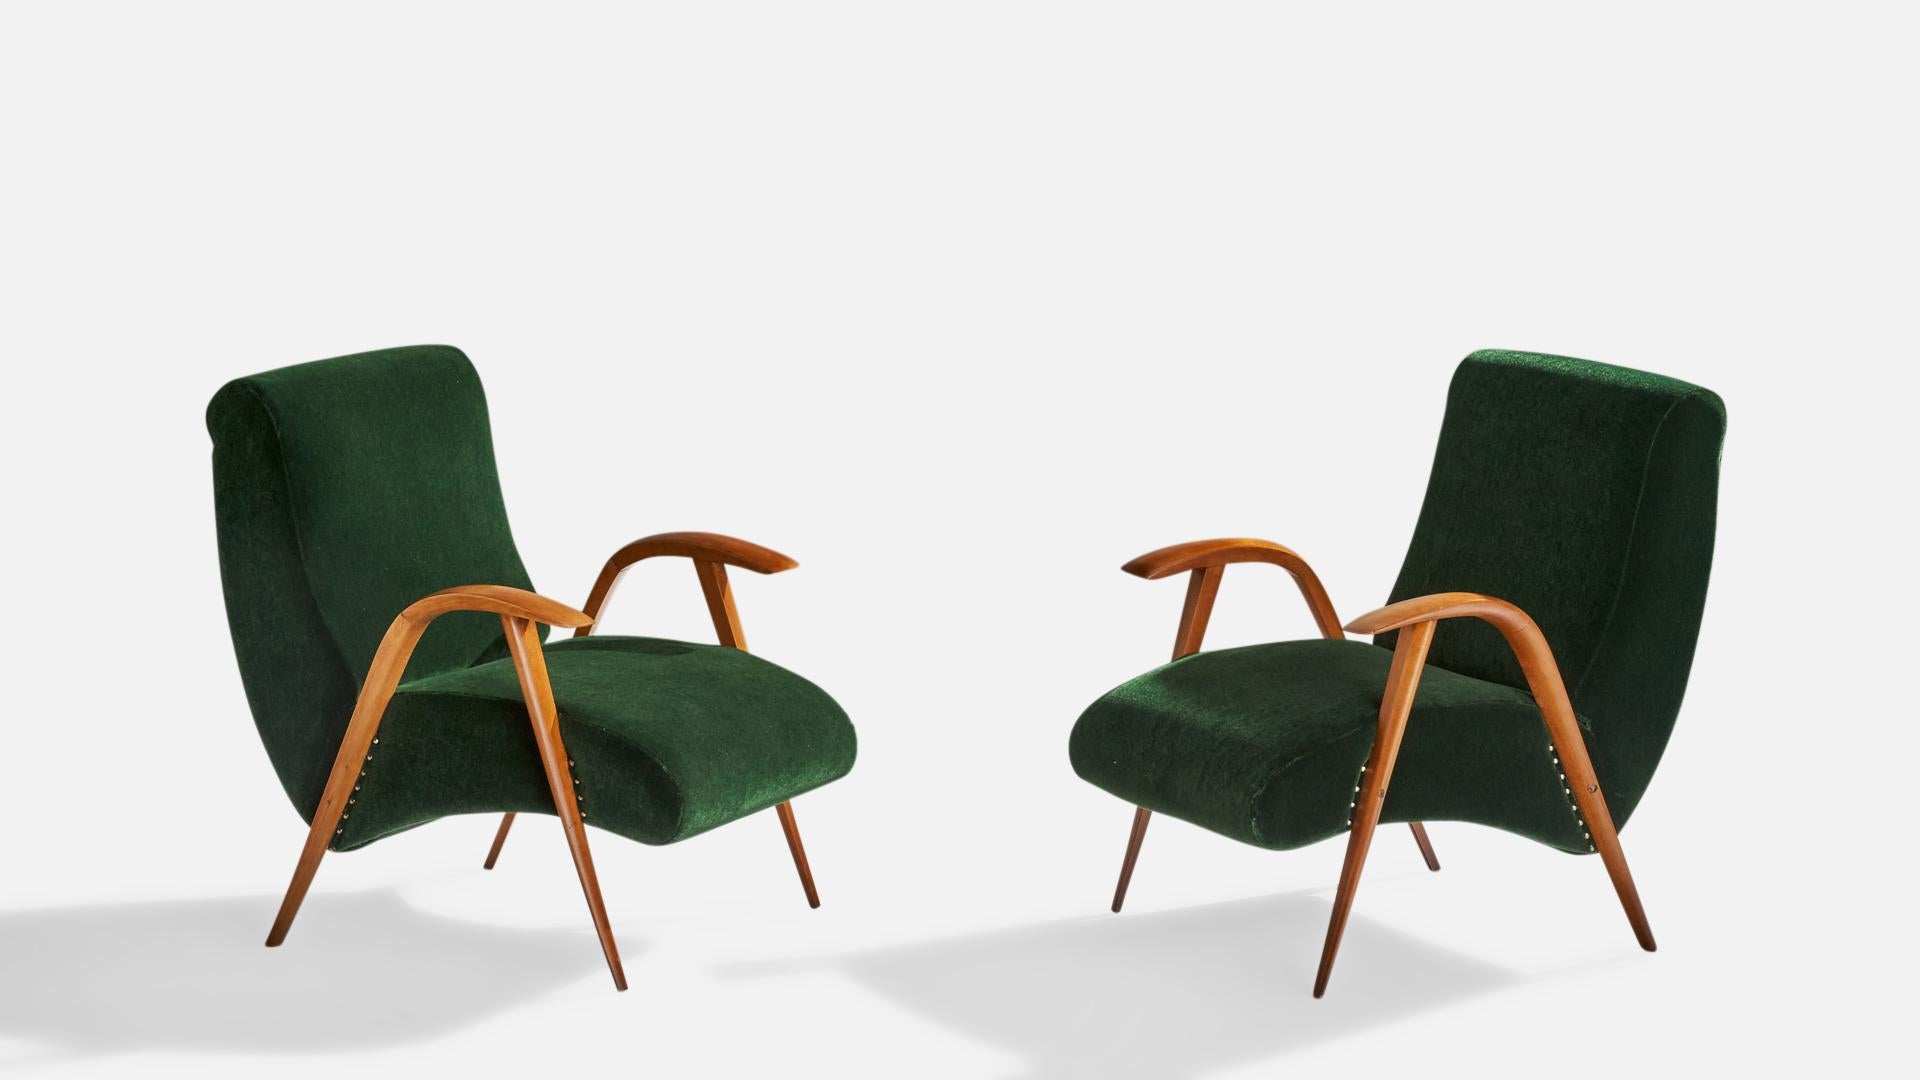 Paire de chaises longues en bois et en velours vert, conçues et produites en Italie, années 1940.

Hauteur du siège : 14.18